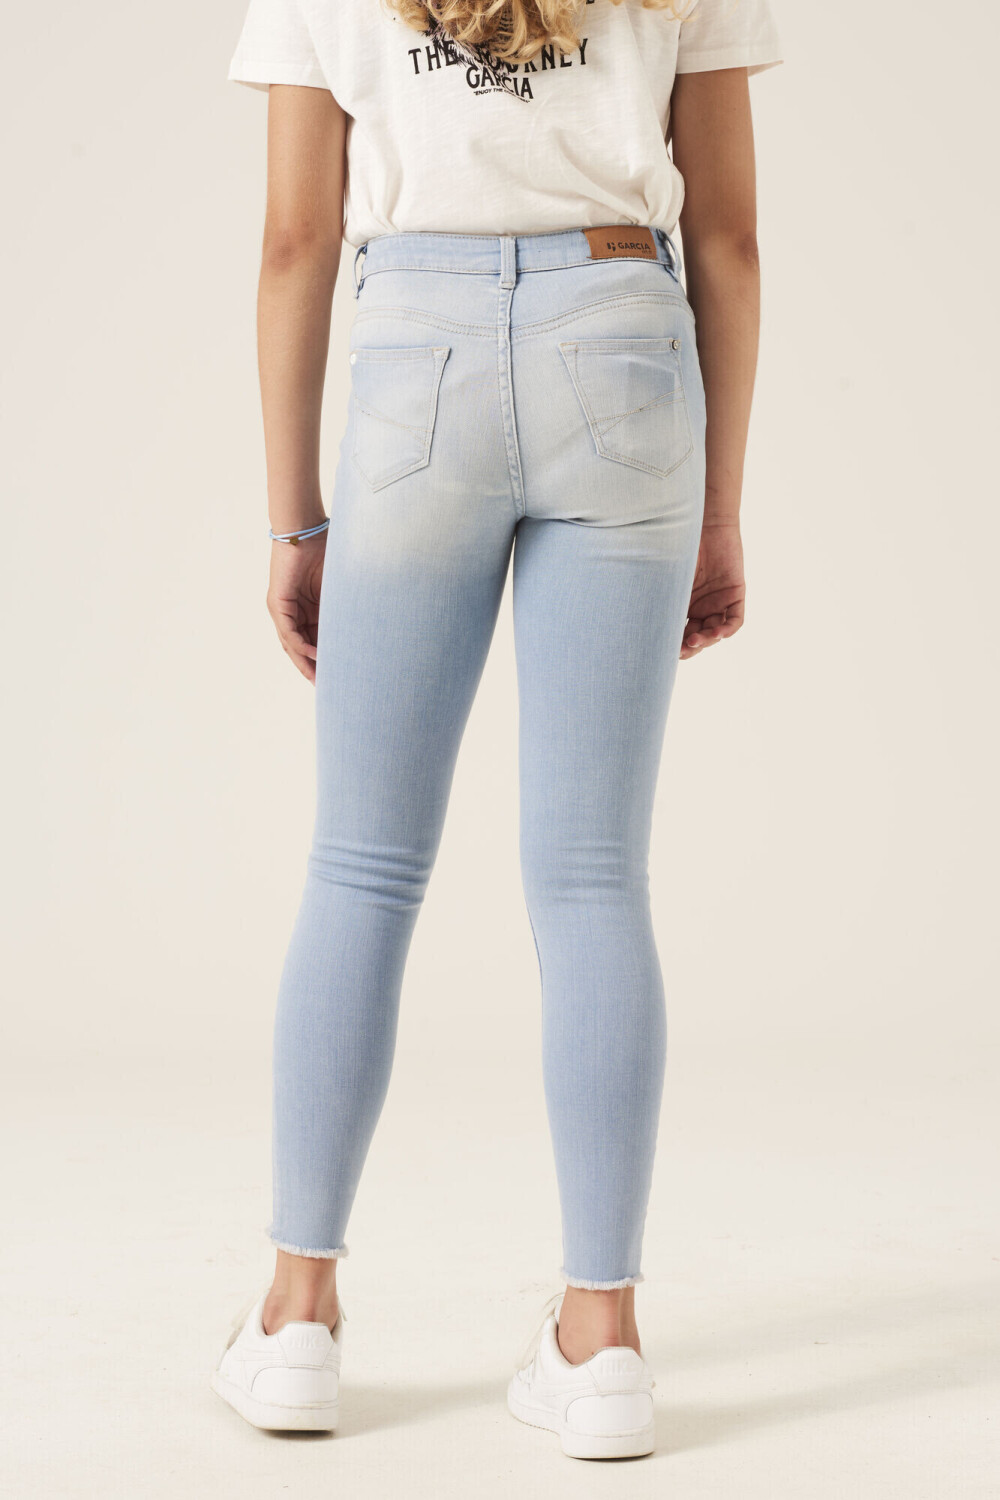 Garcia Jeans 570 Rianna (570-3728) bleached ab 25,06 € | Preisvergleich bei